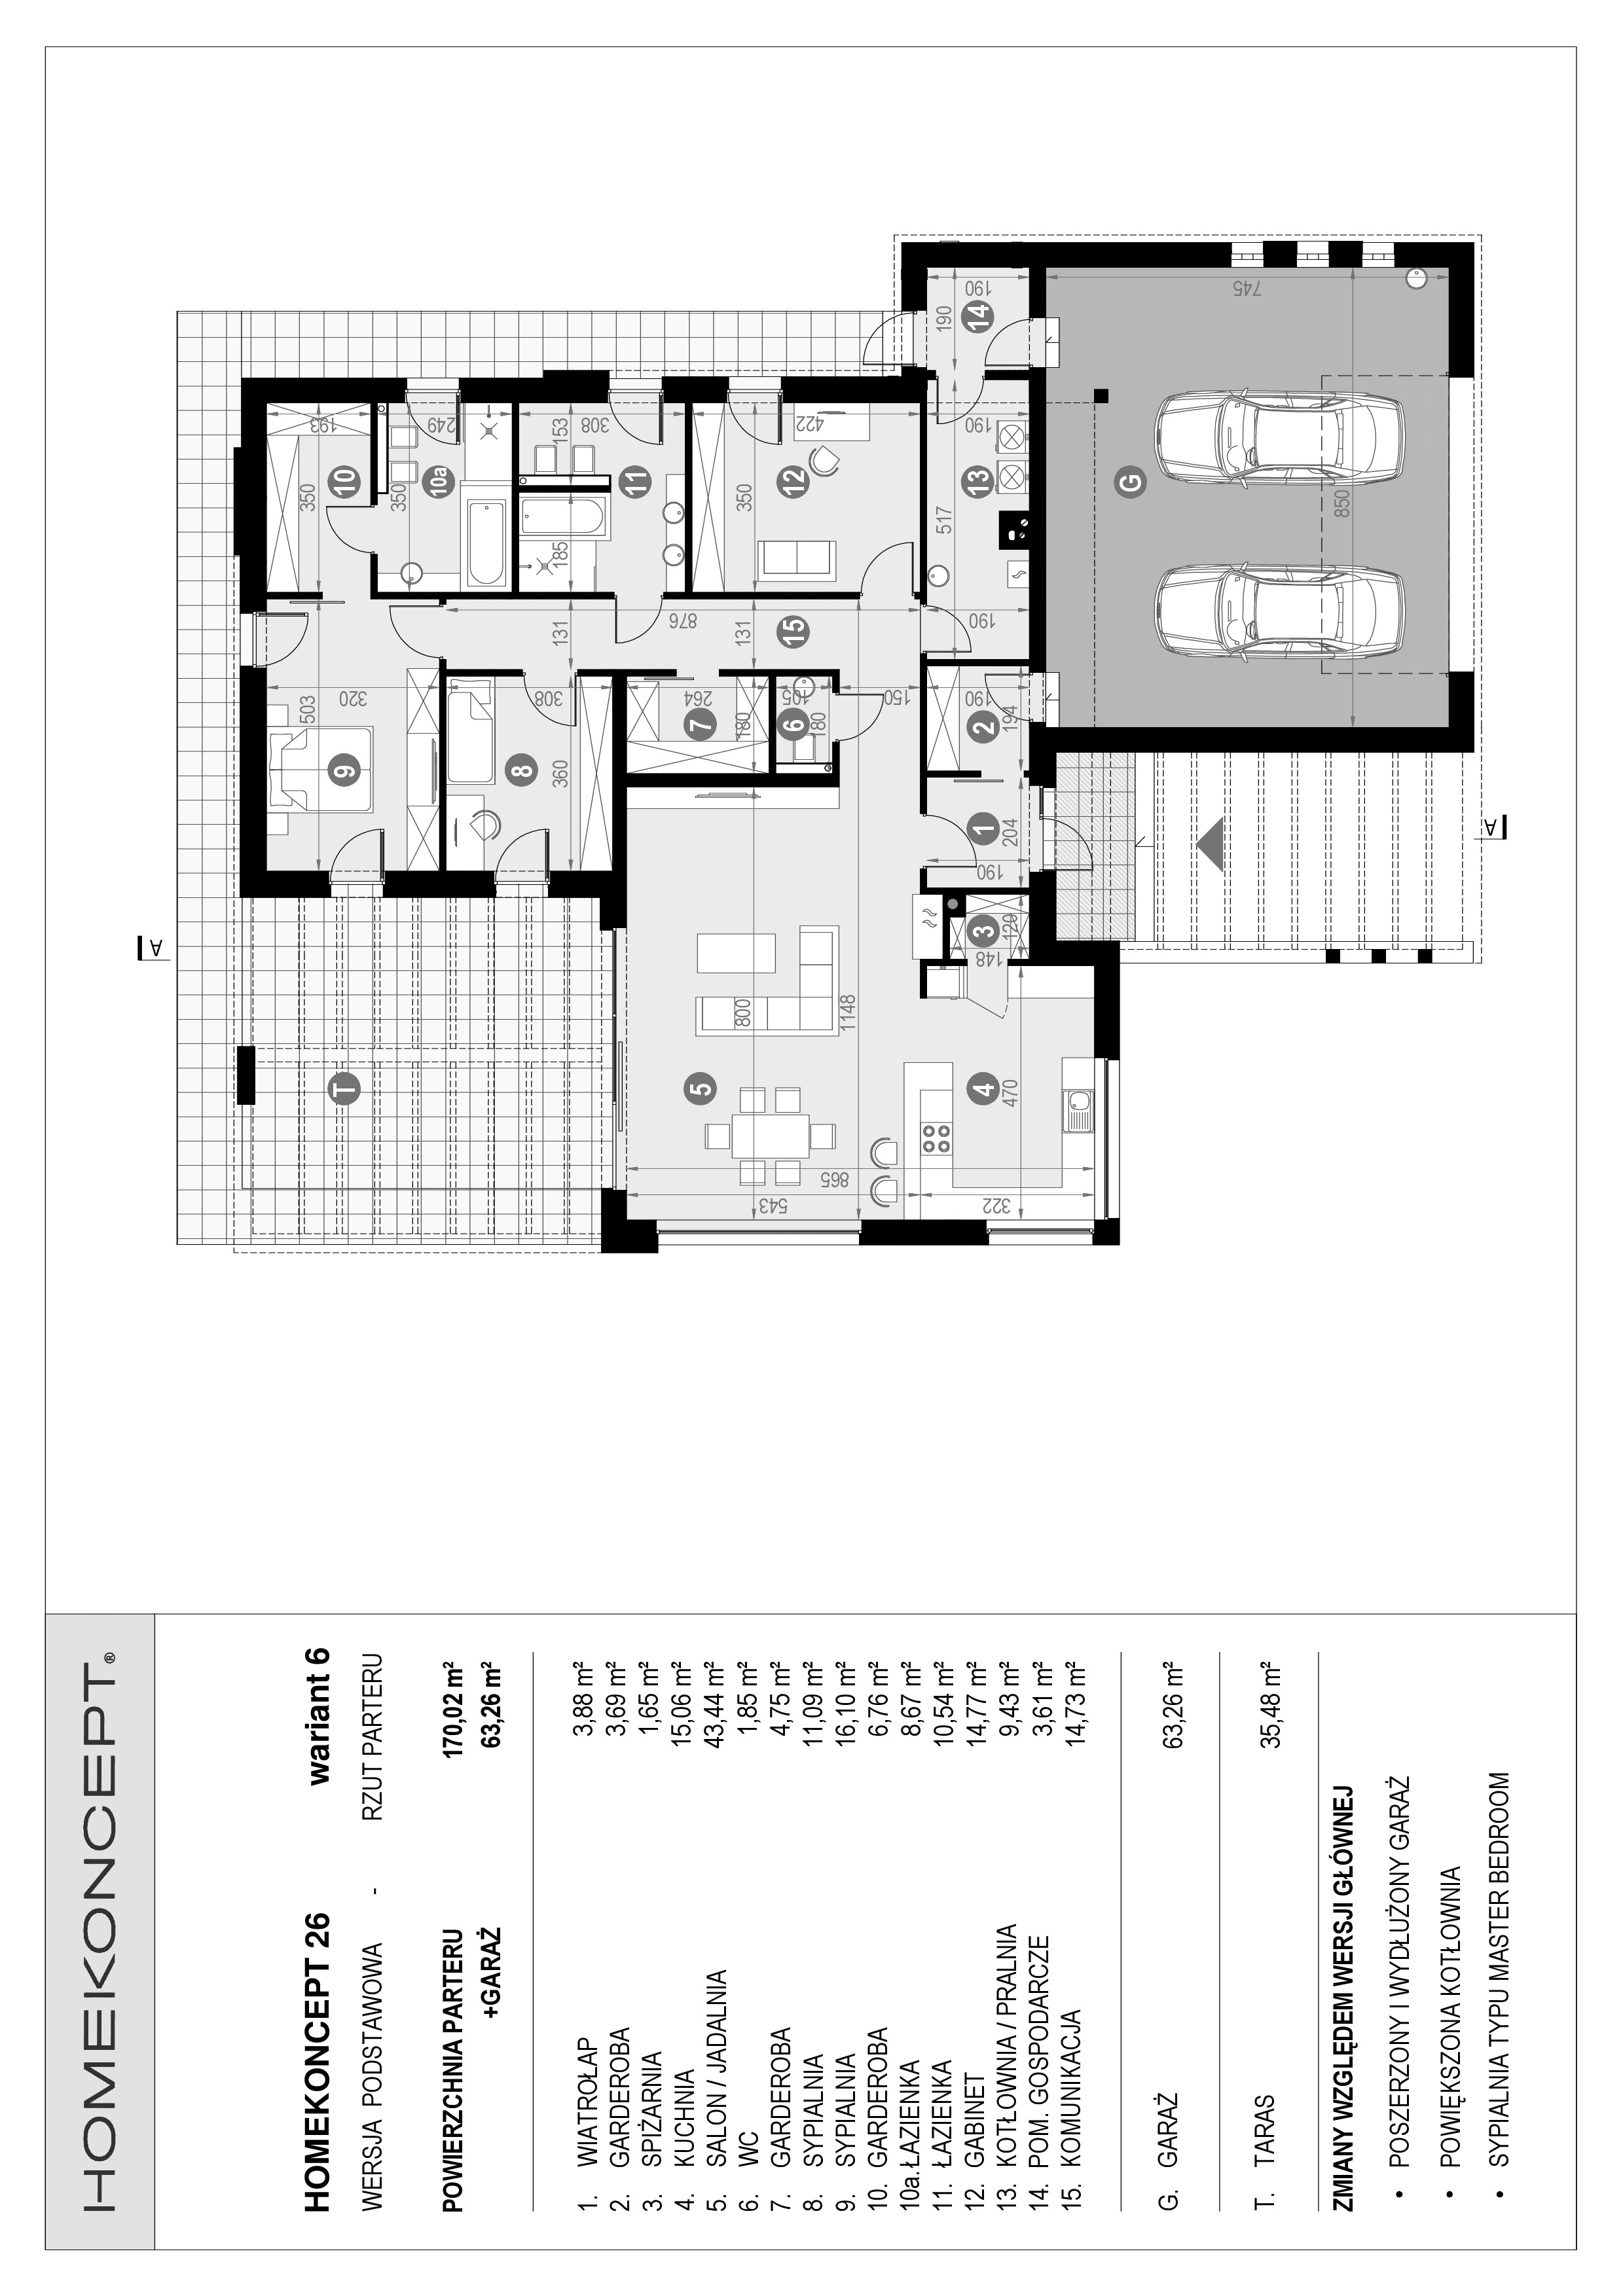 Układ funkcjonalny w projekcie HOMEKONCEPT 26 wariant 6 - idealny dom parterowy